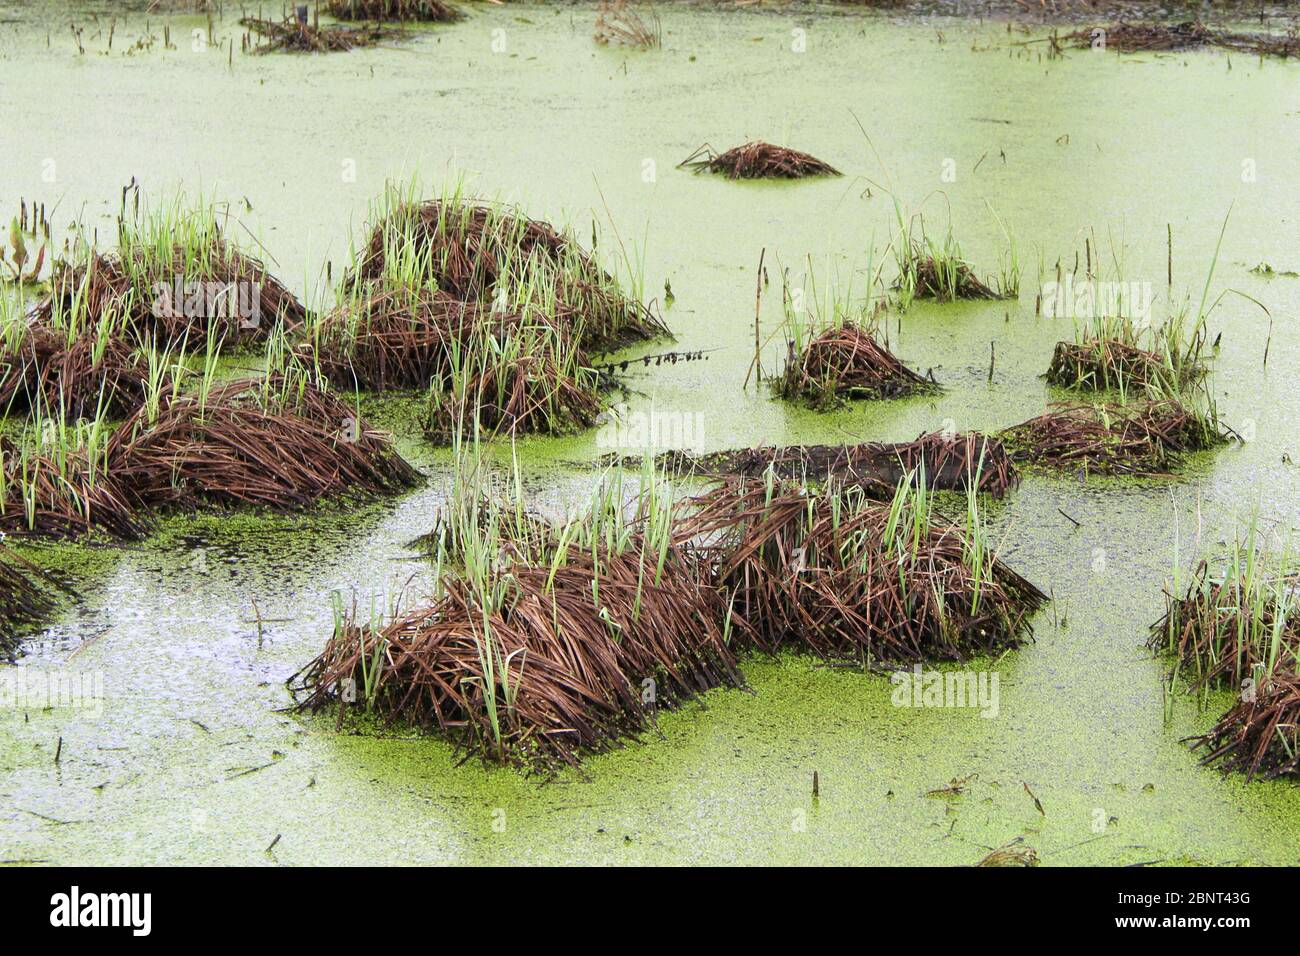 Marais avec bosses, herbe et boue verte. Duckweed à la surface de l'eau. Étang surcultivé. Carottes avec grenouilles. Tourbière humide dangereuse. Banque D'Images